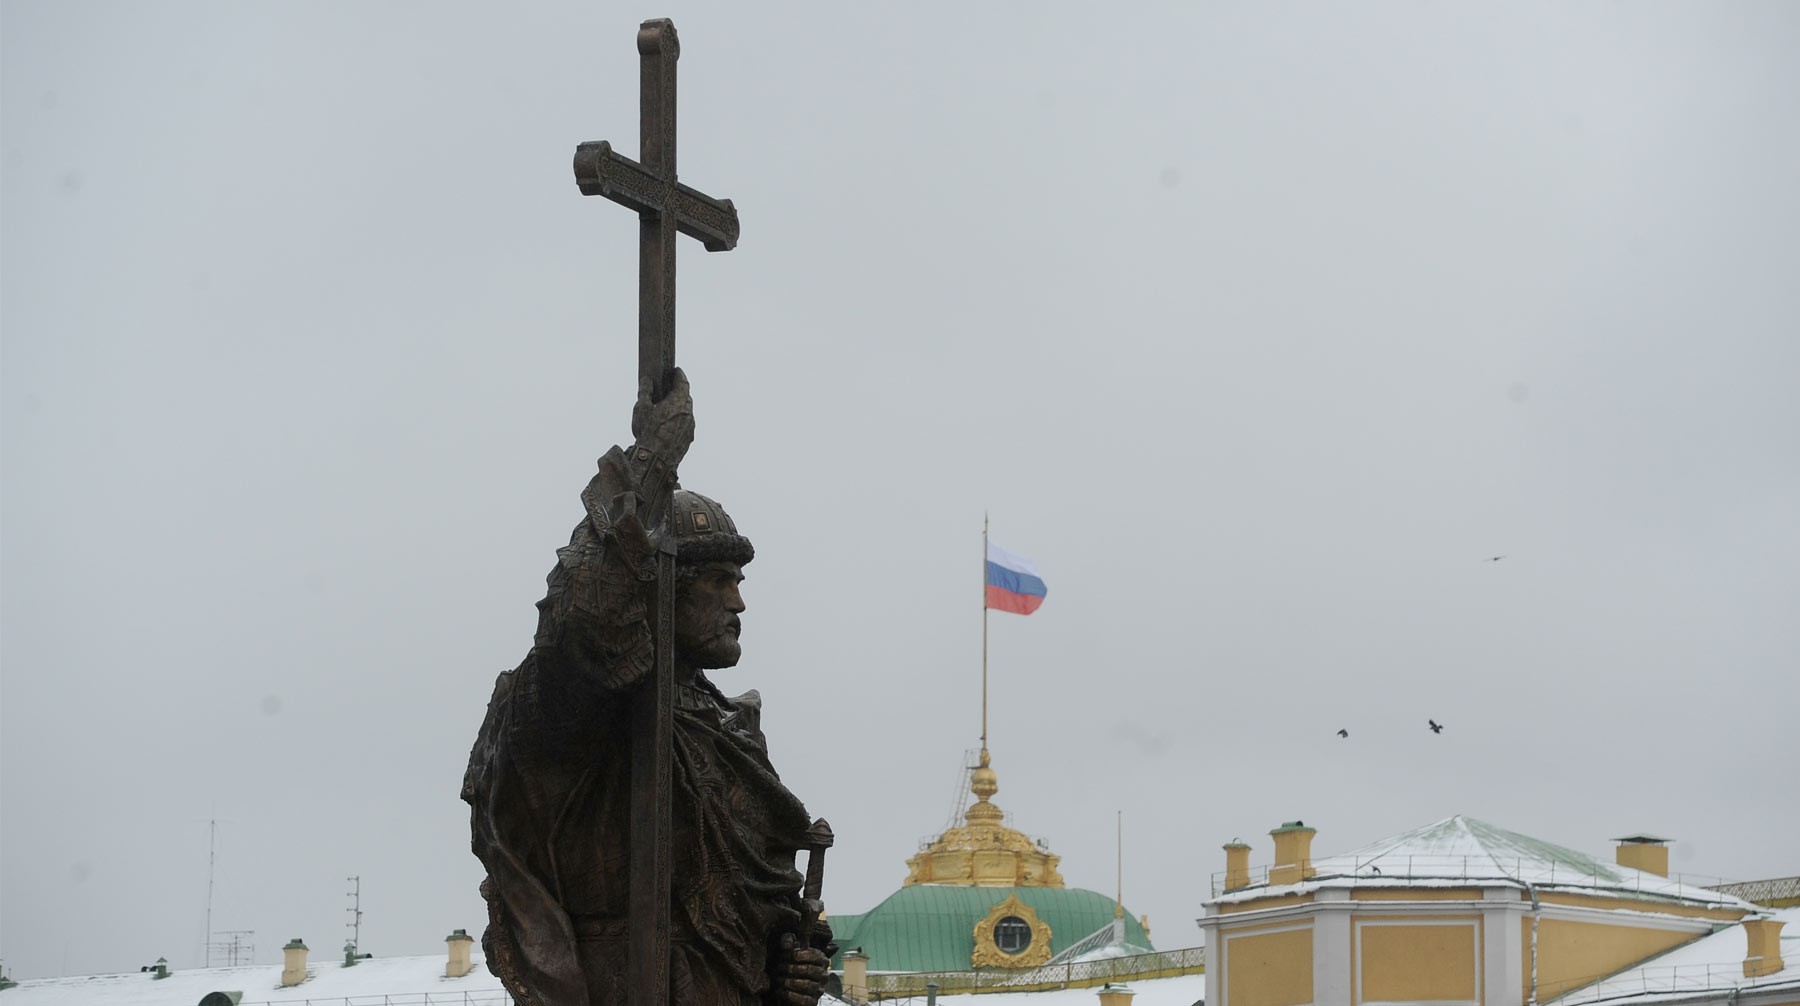 Dailystorm - В РАН не согласились с РПЦ в оценке святого князя Владимира как основателя Руси